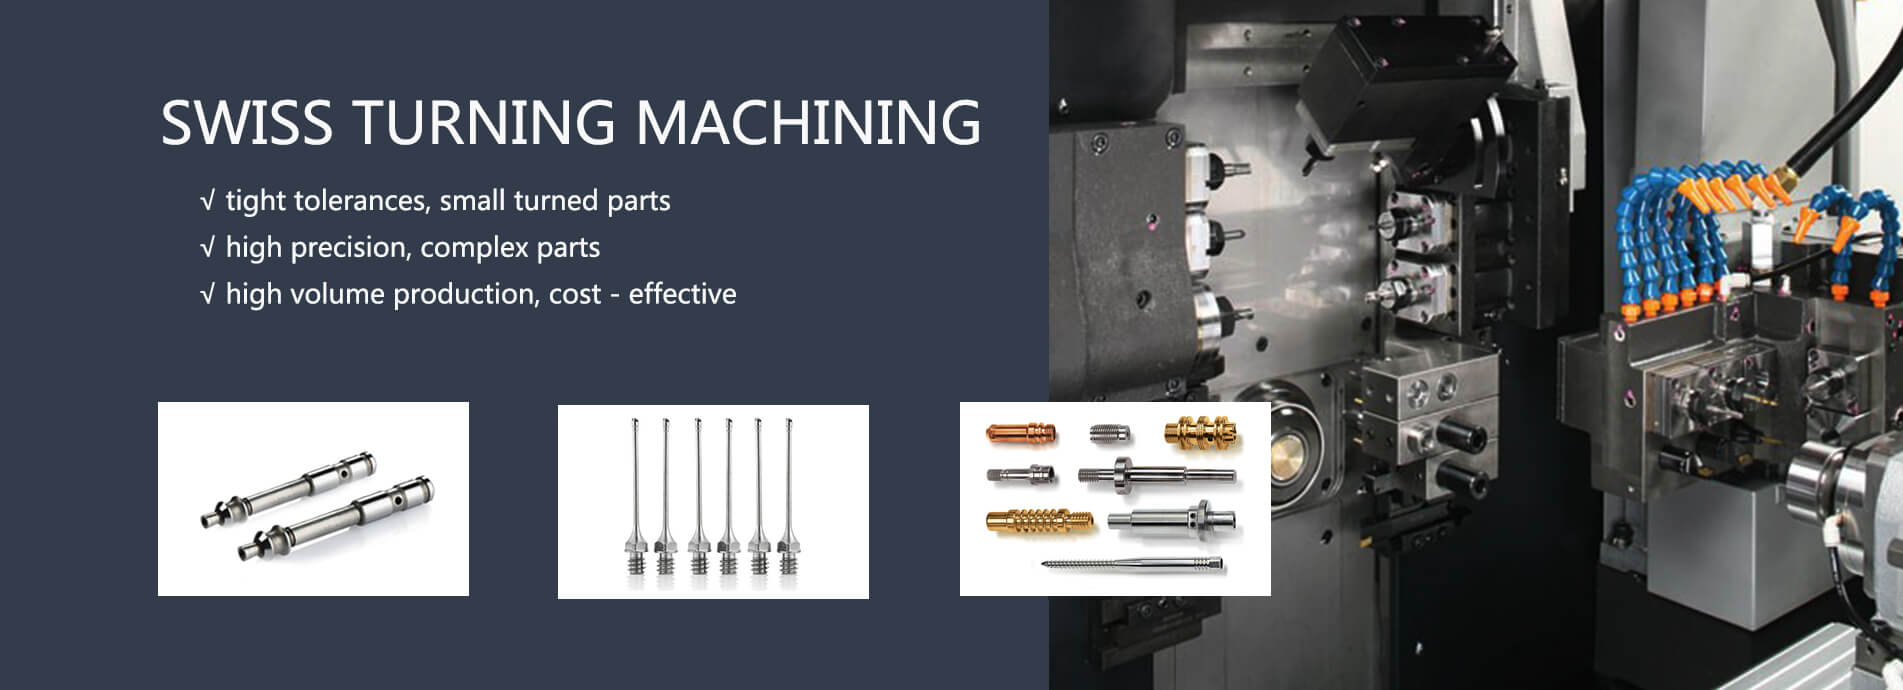 Swiss turning machining